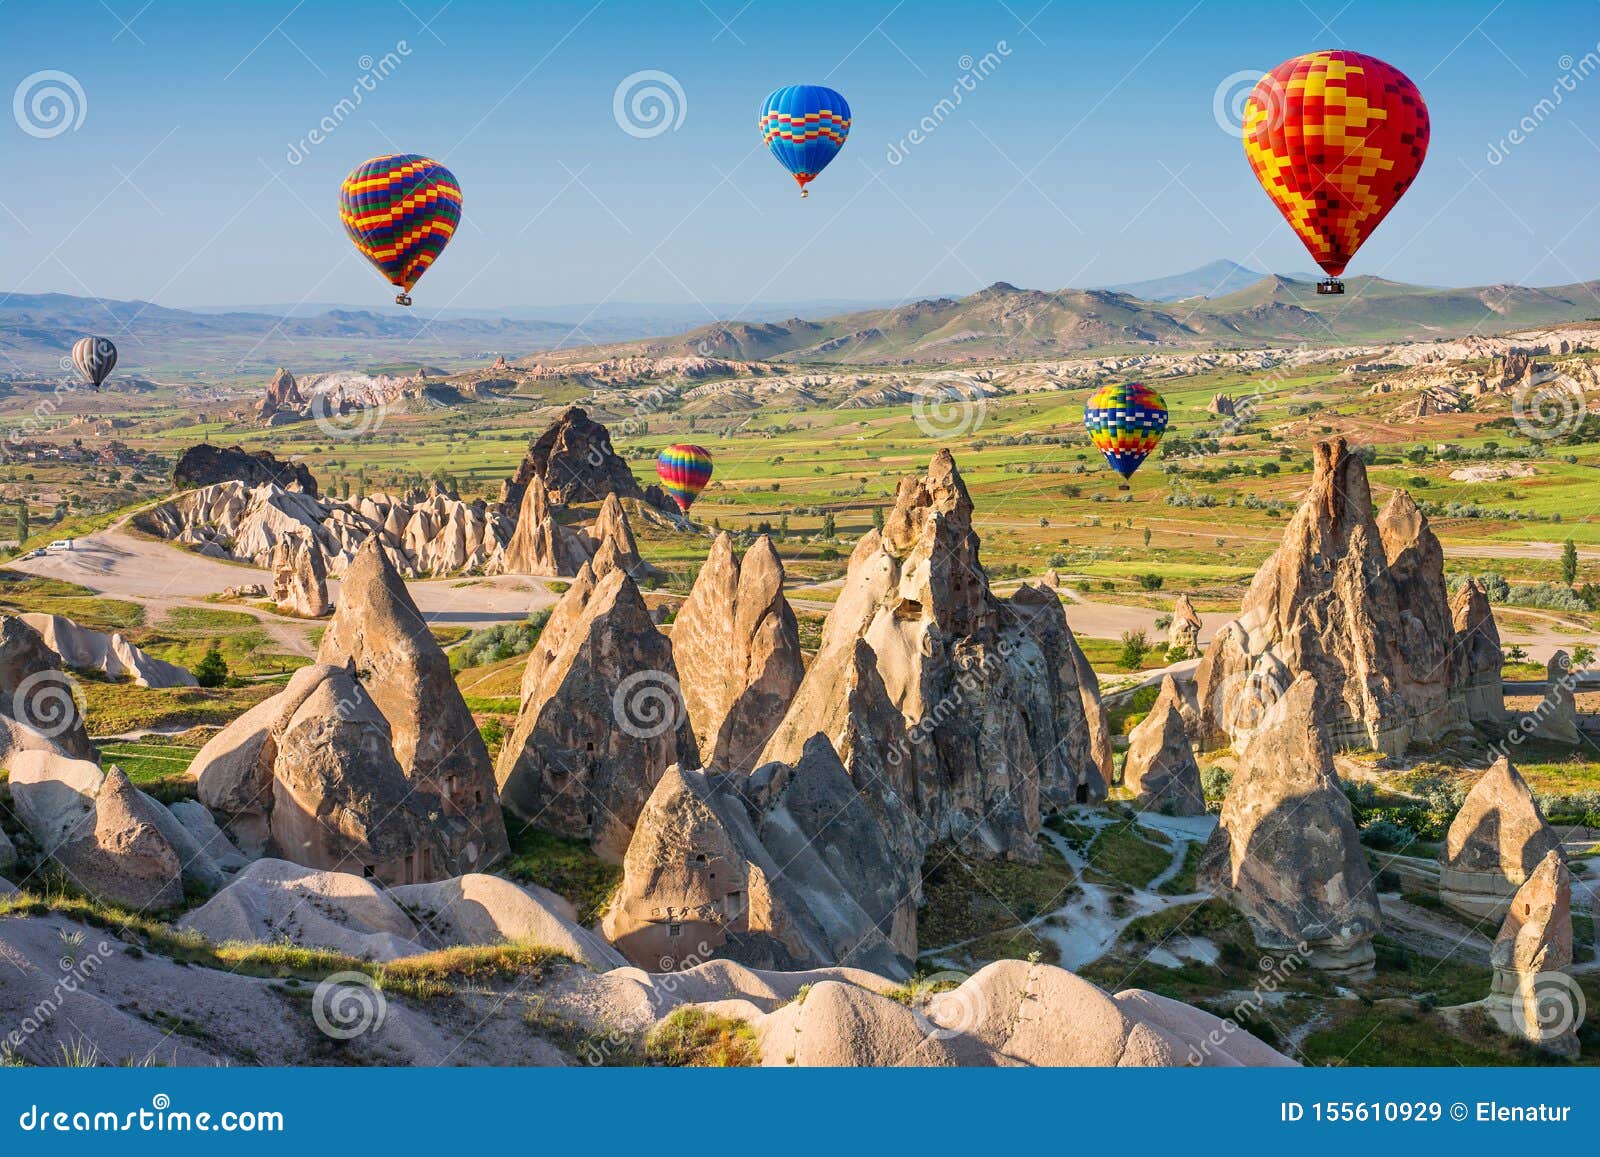 Najlepsze Miejsce Na Å›wiecie Wielka Atrakcja Turystyczna Lotu Cappadocia - Balon. Cappadocia Jest Znana  Na CaÅ‚ym Å›wiecie Jako Jedno Z Najlepszych Miejsc Do L Obraz Stock - Obraz  złożonej z jeden, sunlight: 155610929